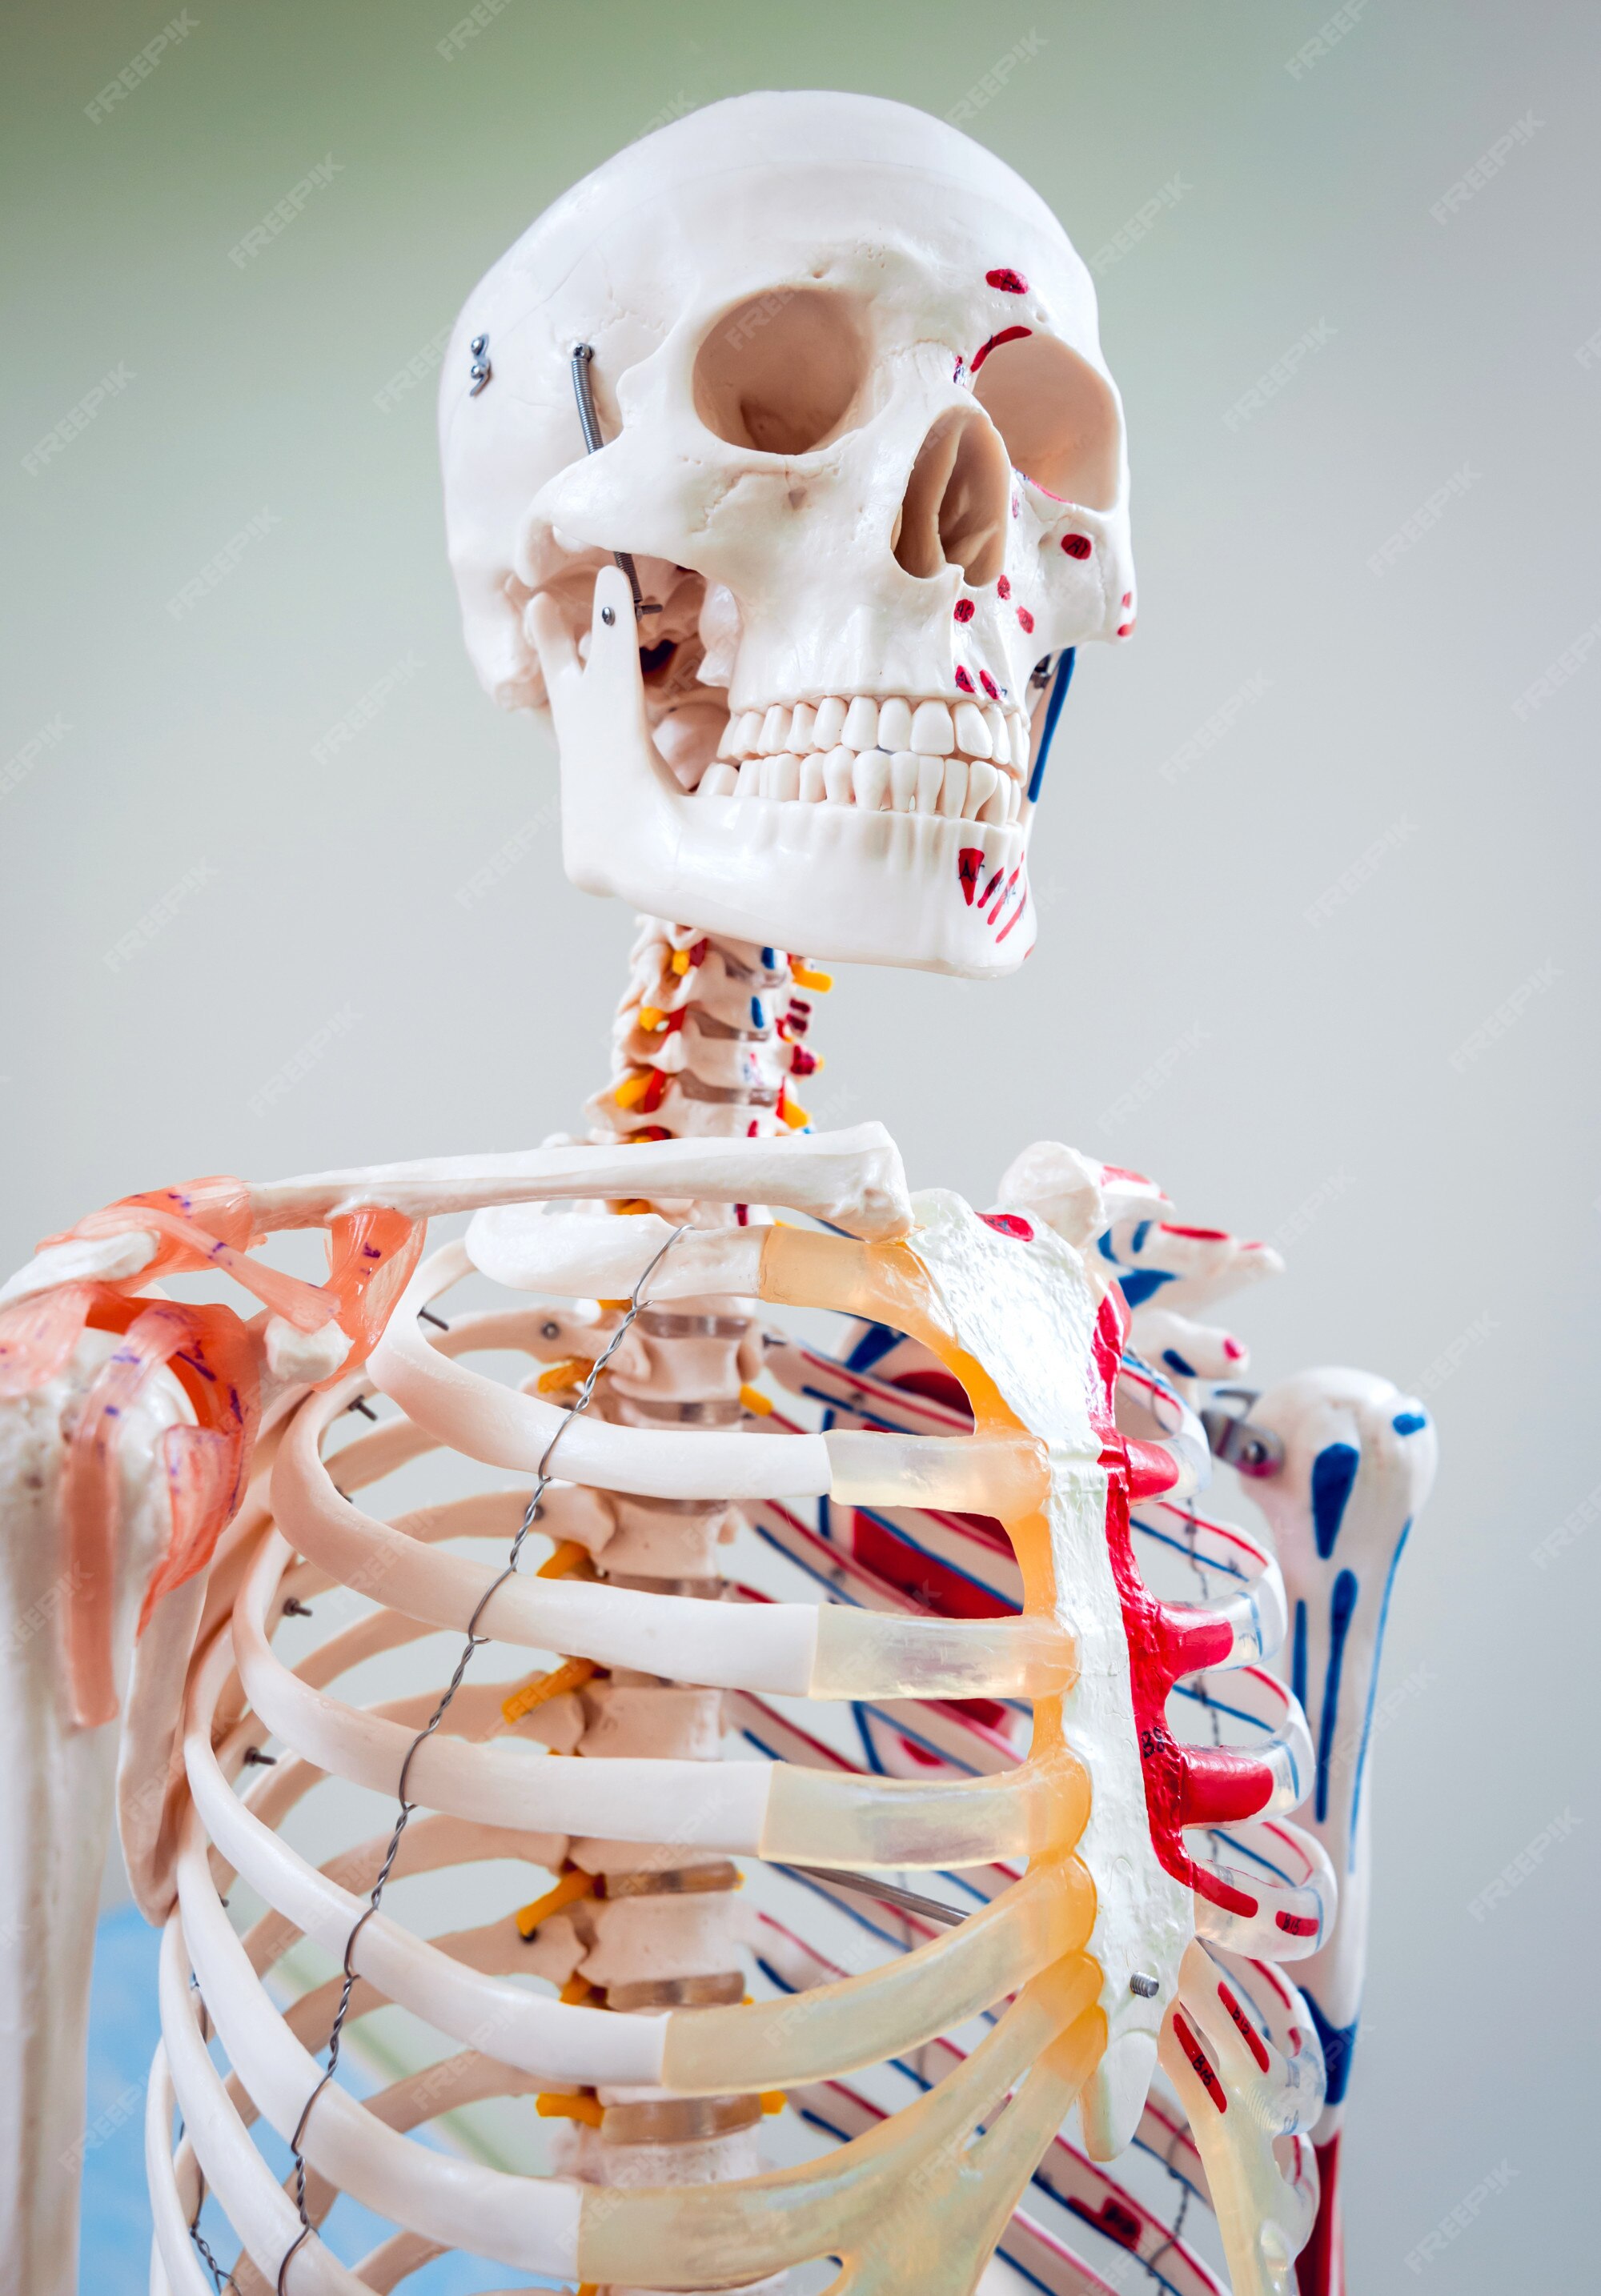 Modelo de anatomia humana. consultório médico. | Foto Premium